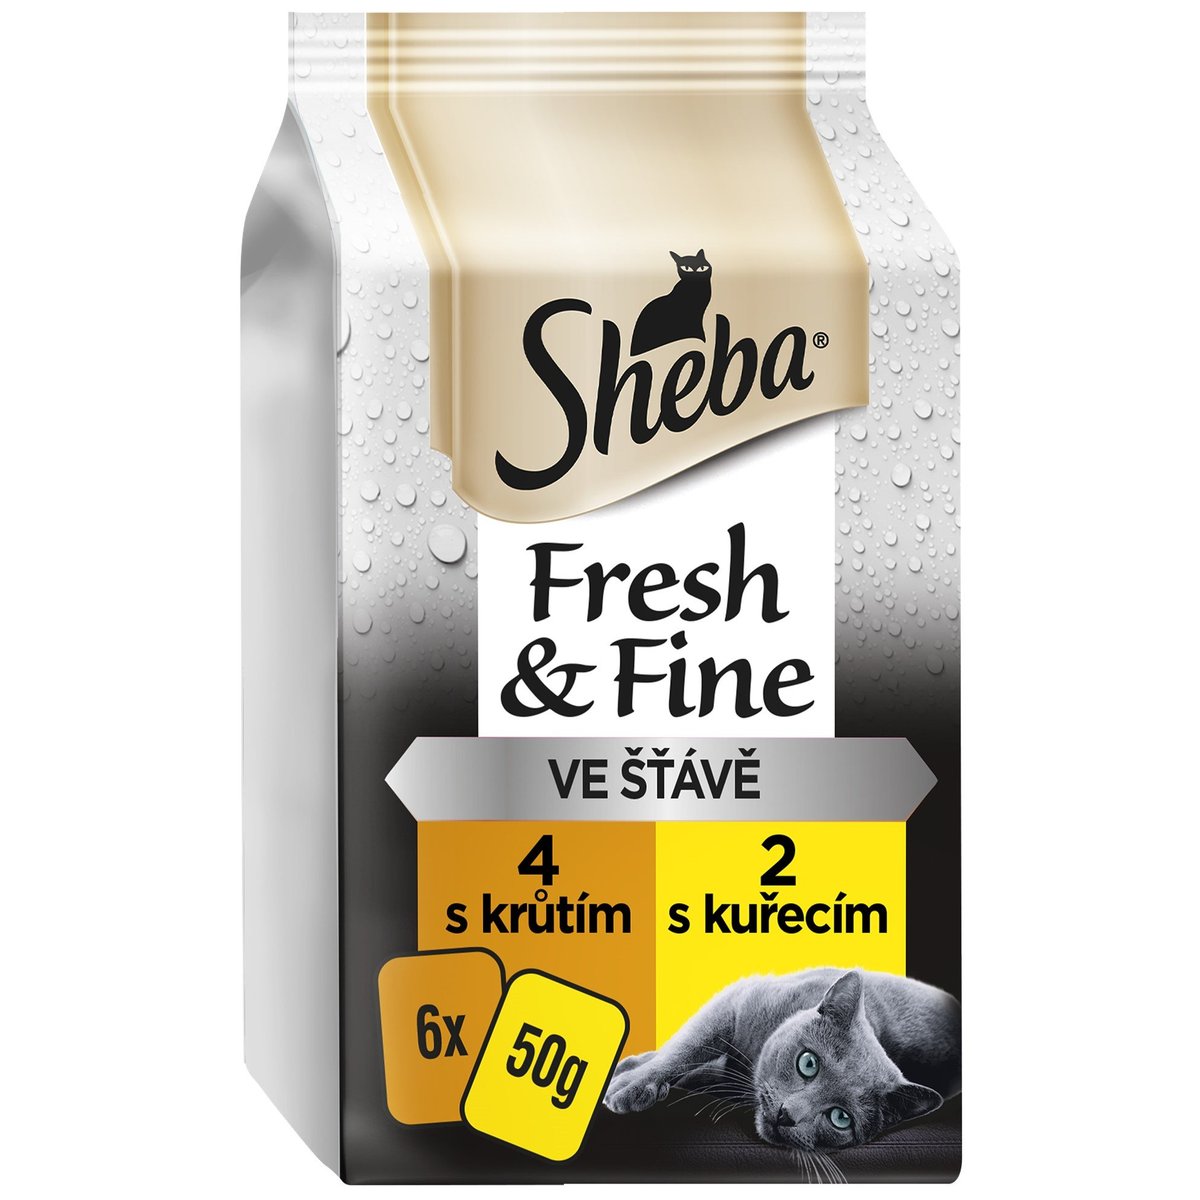 Sheba Fresh & Fine kapsičky kuřecí a krůtí pro dospělé kočky (6×50g)